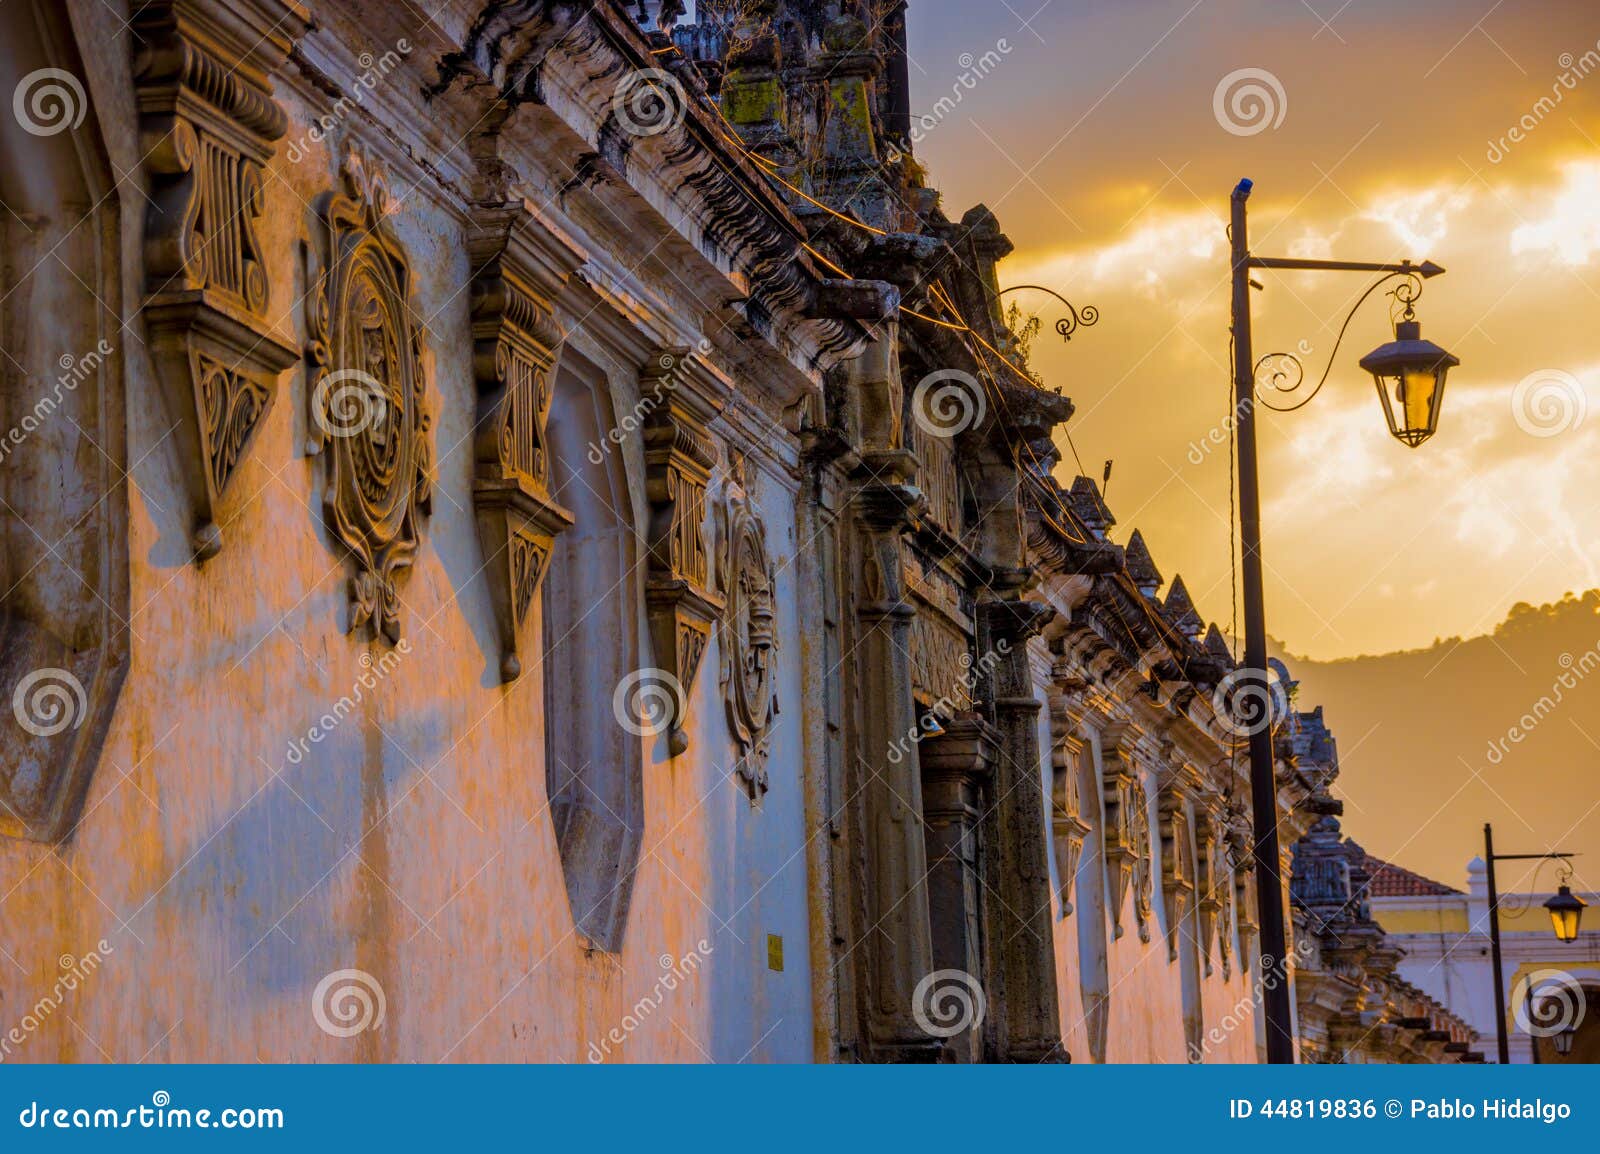 colonial architecture in antigua city guatemala